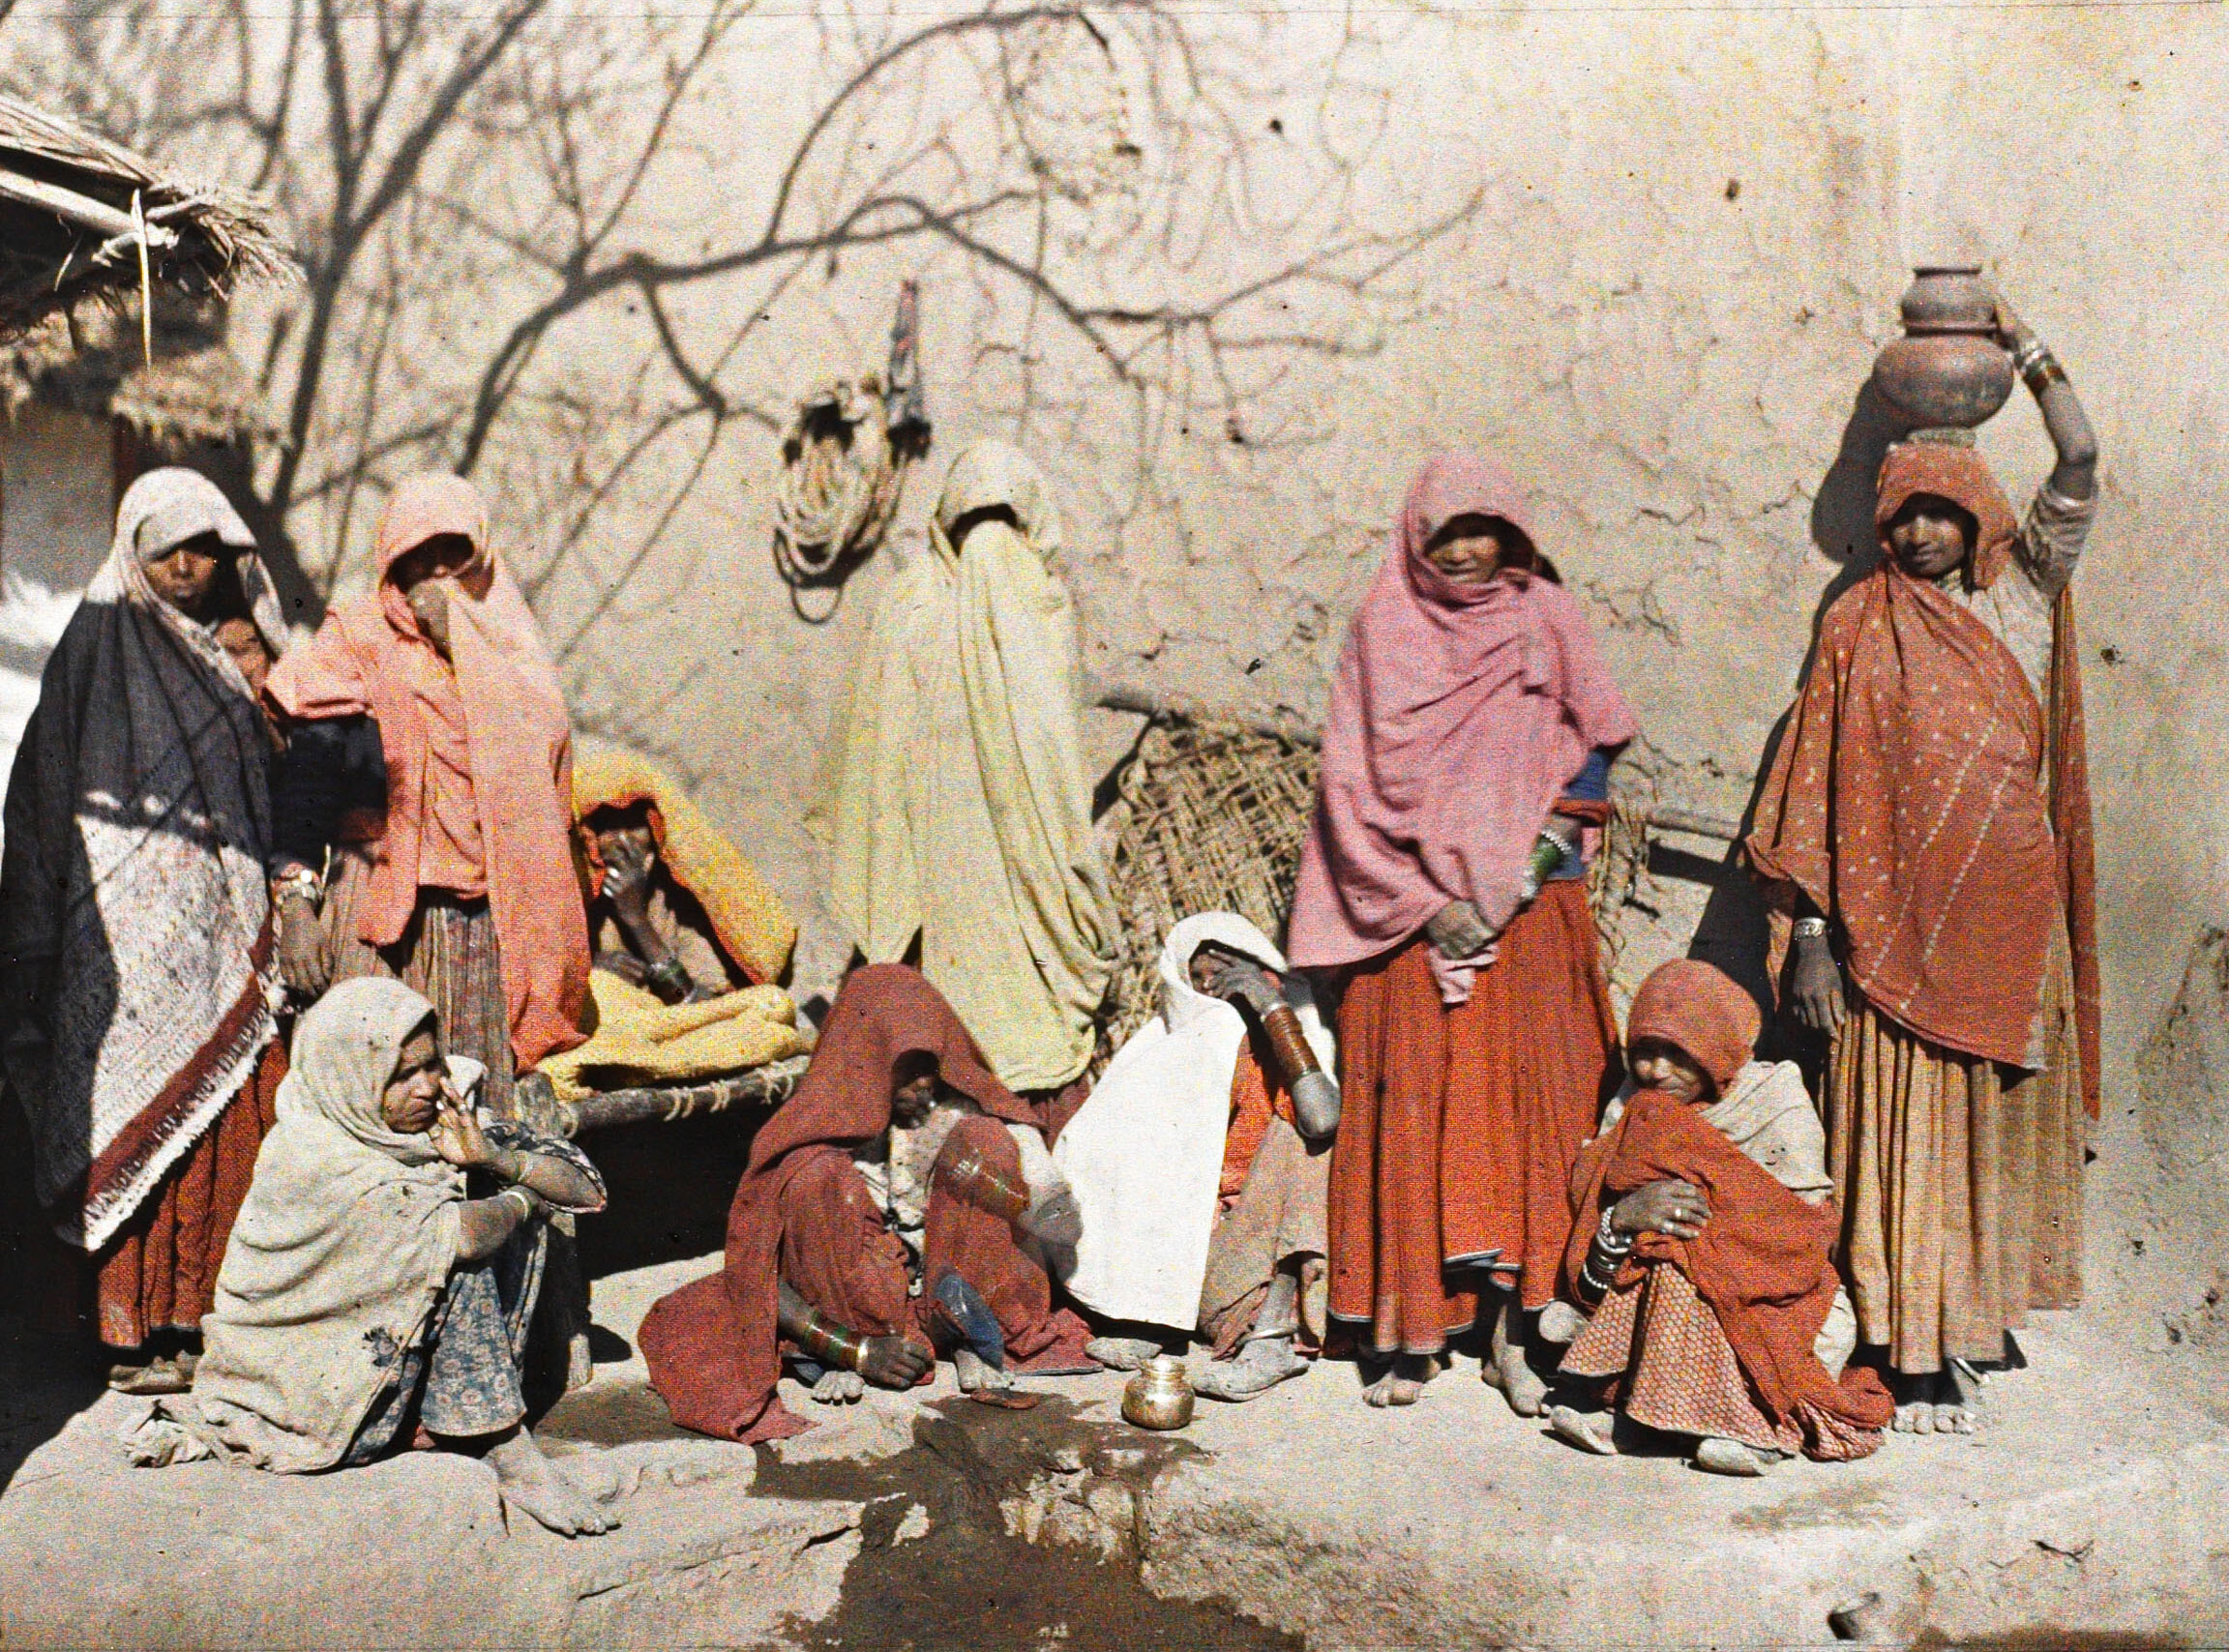 Агра, Индия. Женщины возле водопоя, 1913 год, автор Стефан Пассе (автохром)